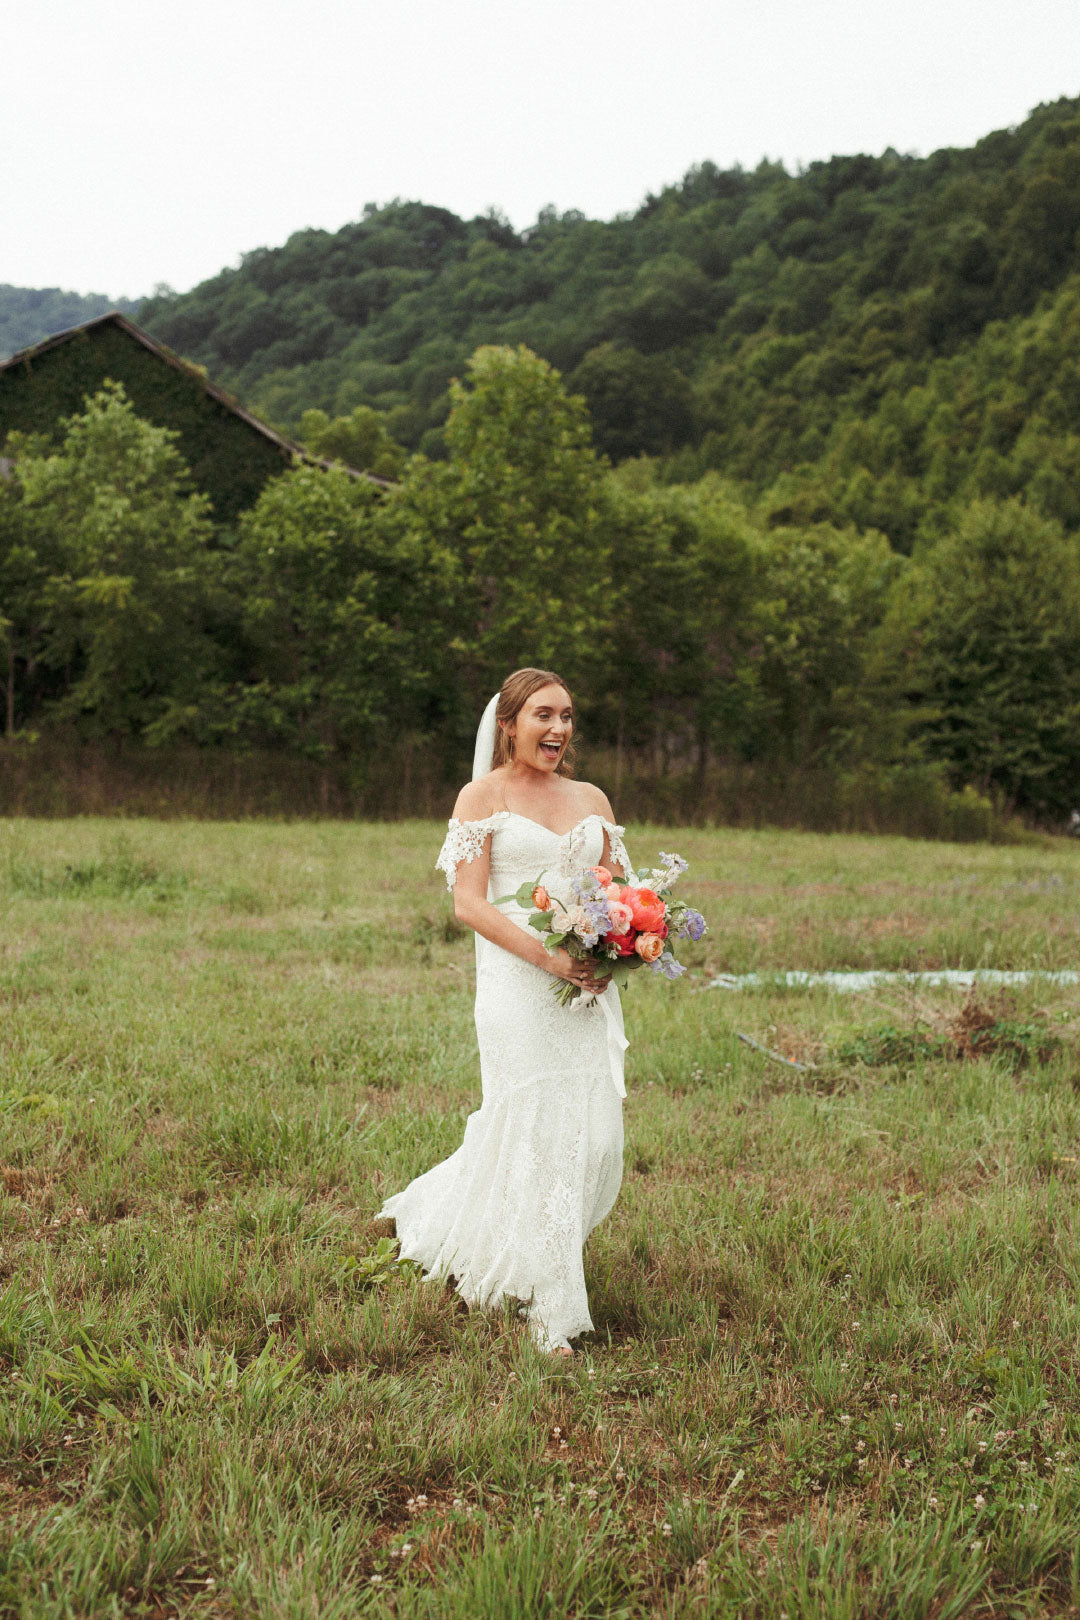 Bride holding wedding bouquet walking in field